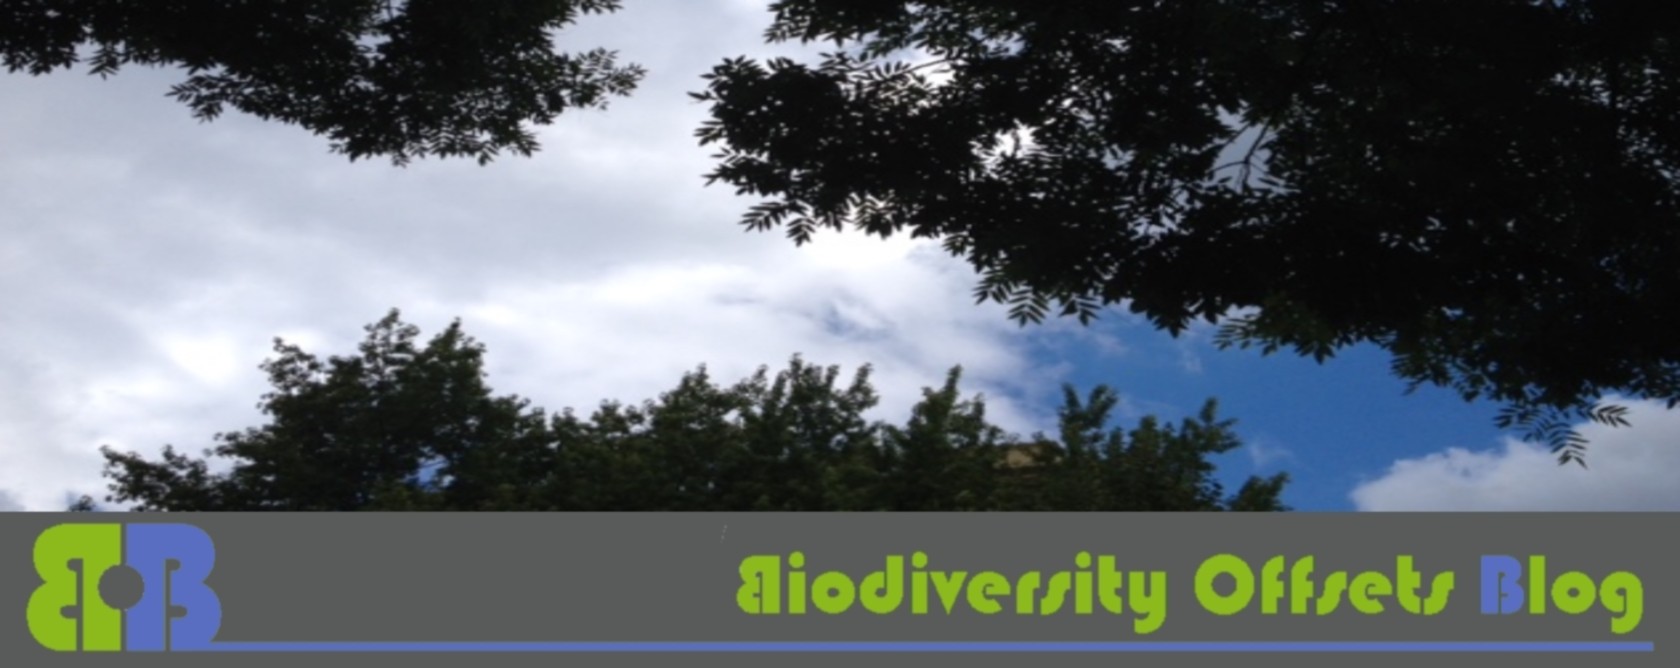 Biodiversity Offsets Blog